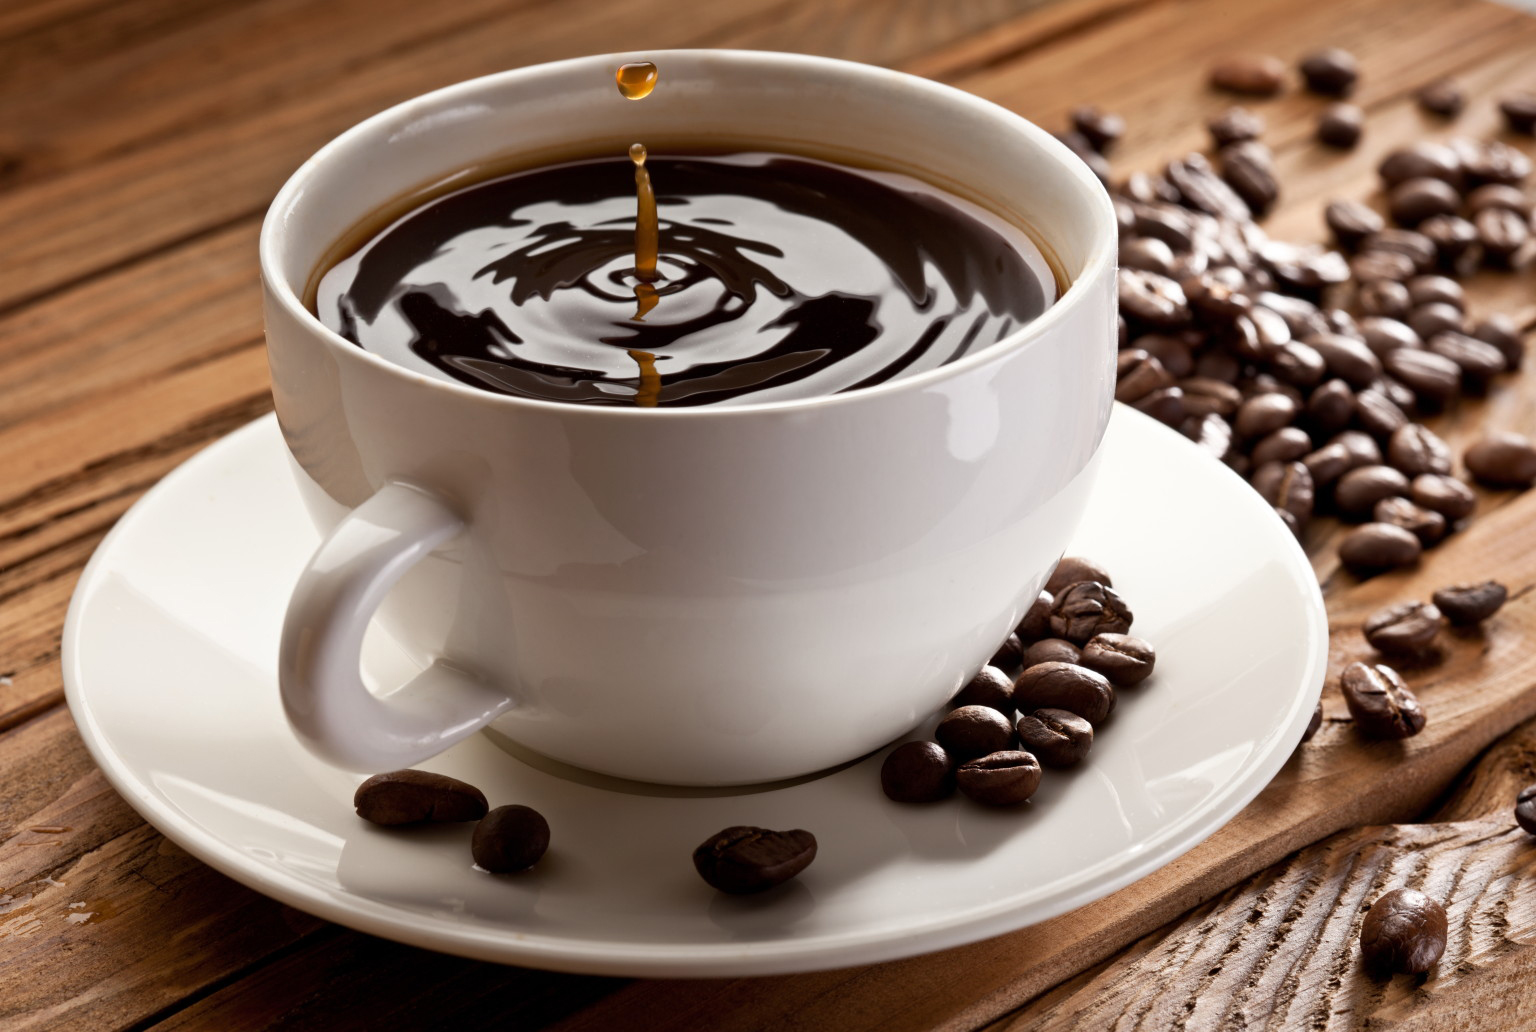 IMPA - Uma pitada de sistema dinâmico para a melhor xícara de café